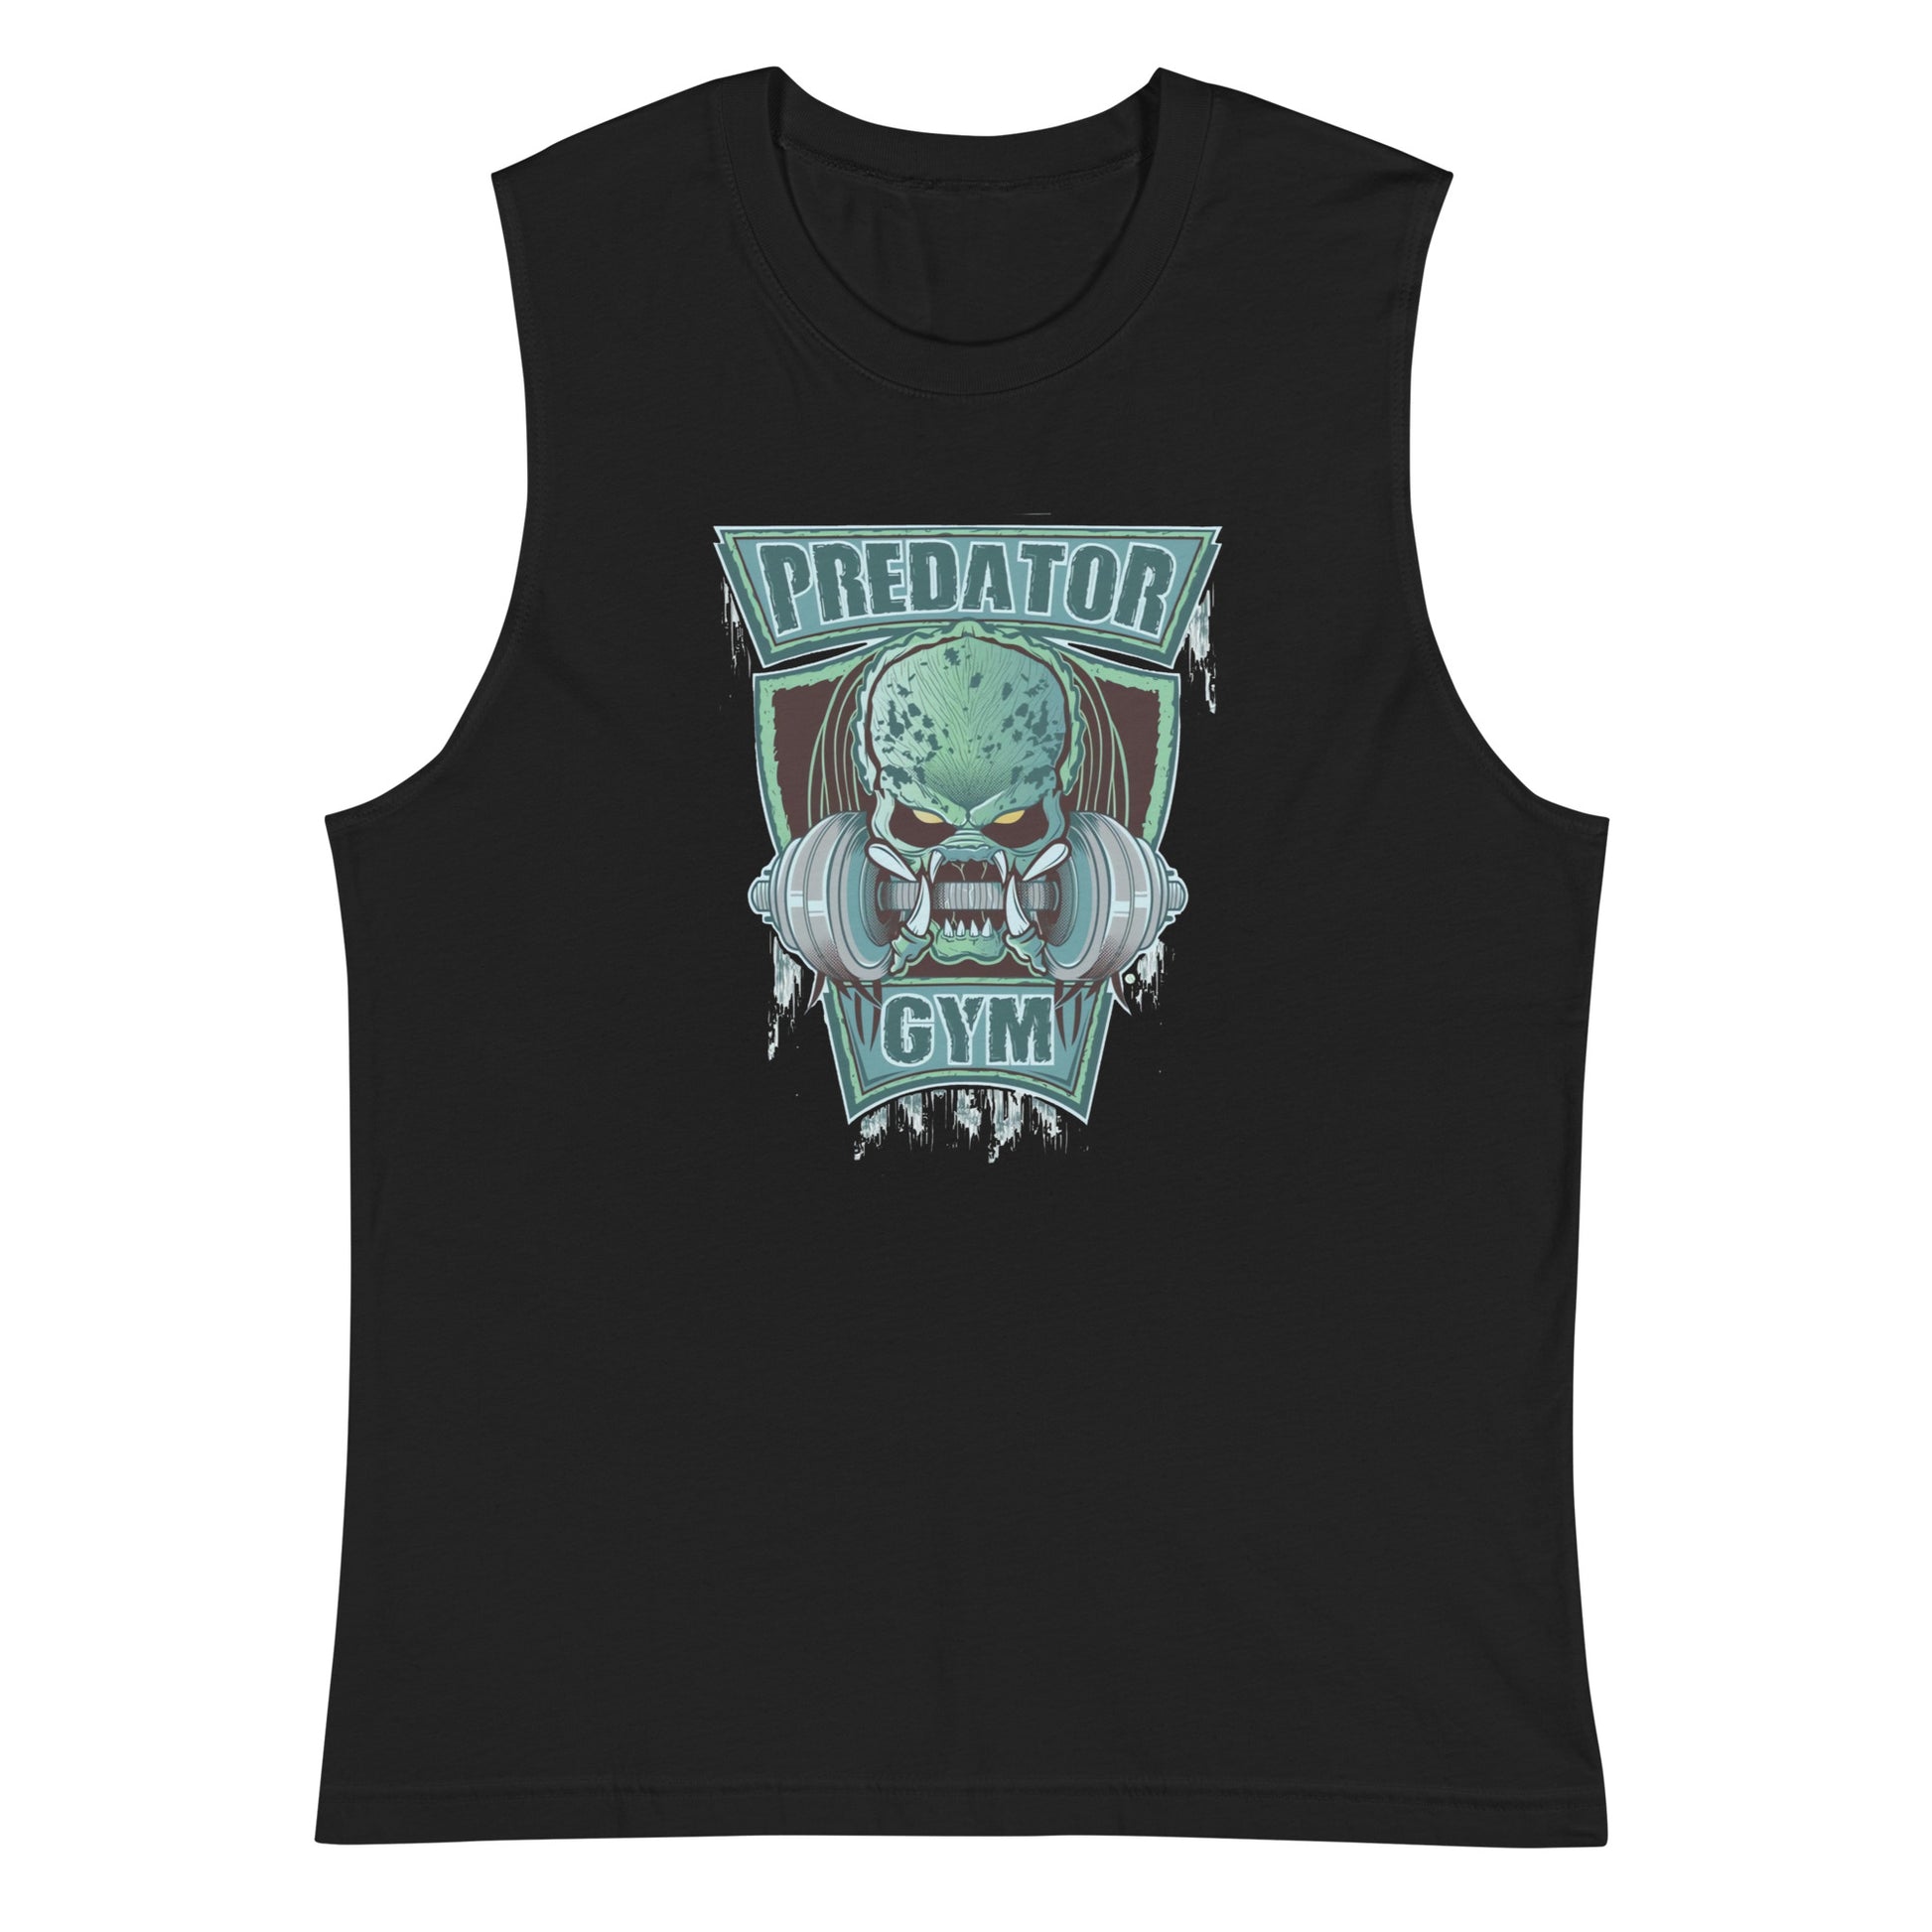 Camiseta sin mangas perfecta para entrenar, Camiseta Predator Gym comprala en línea y experimenta el mejor servicio al cliente.